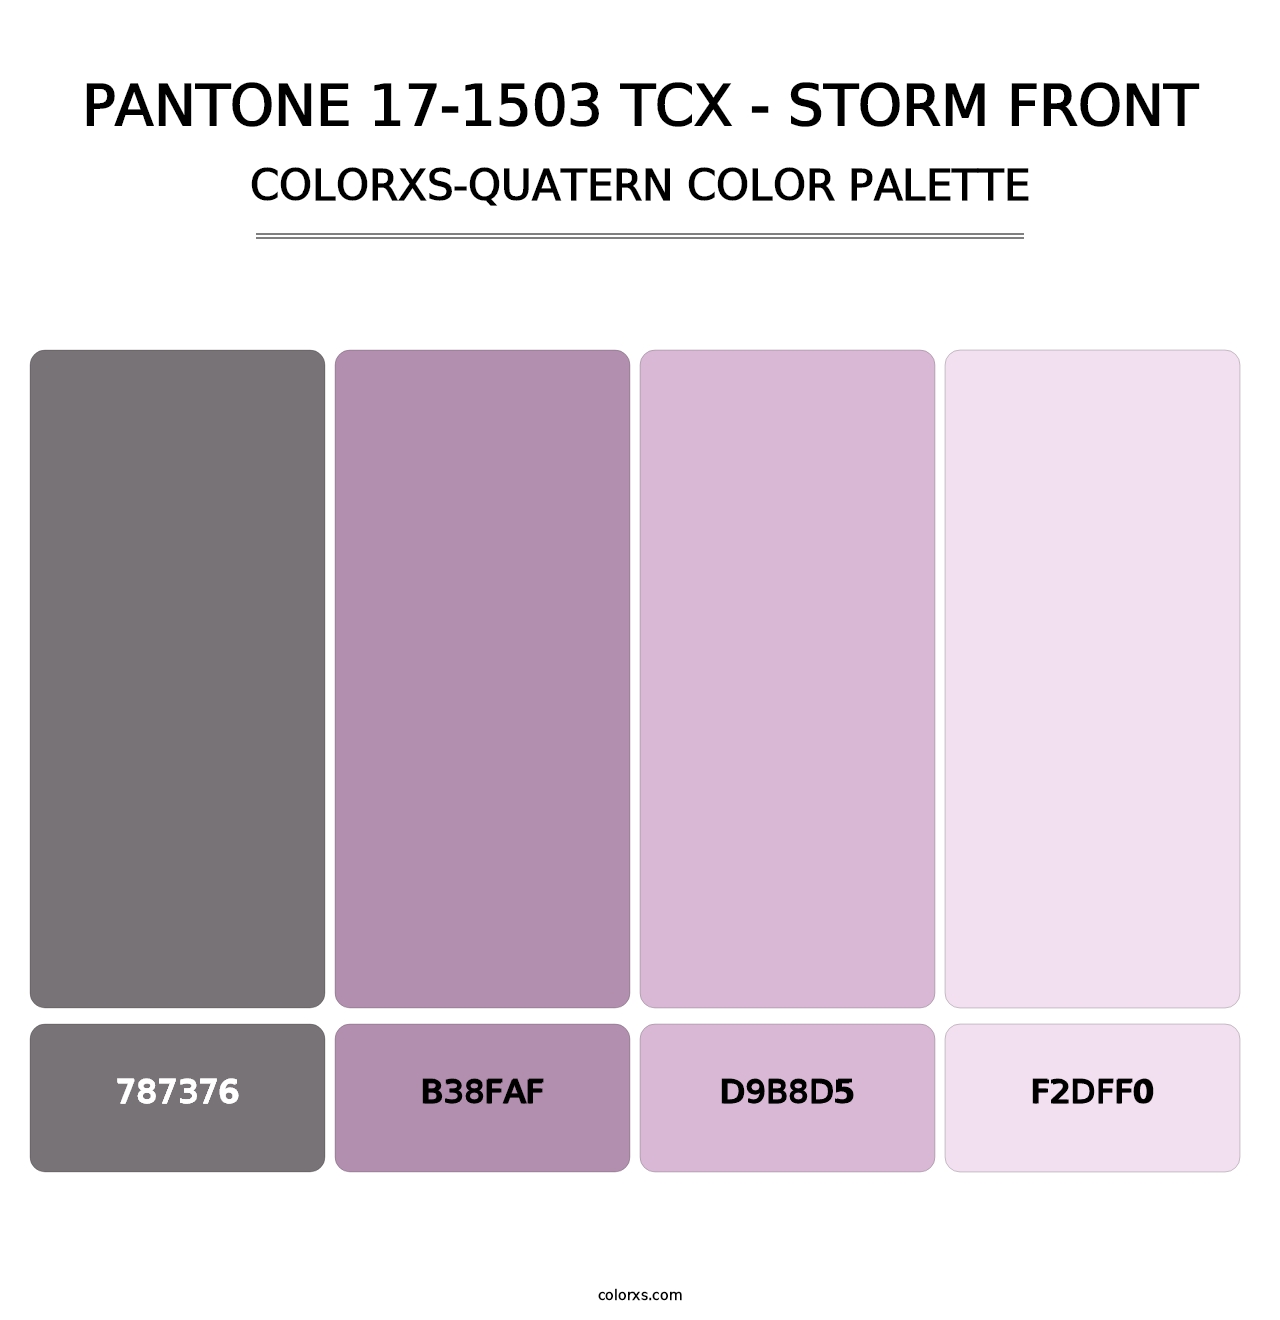 PANTONE 17-1503 TCX - Storm Front - Colorxs Quatern Palette